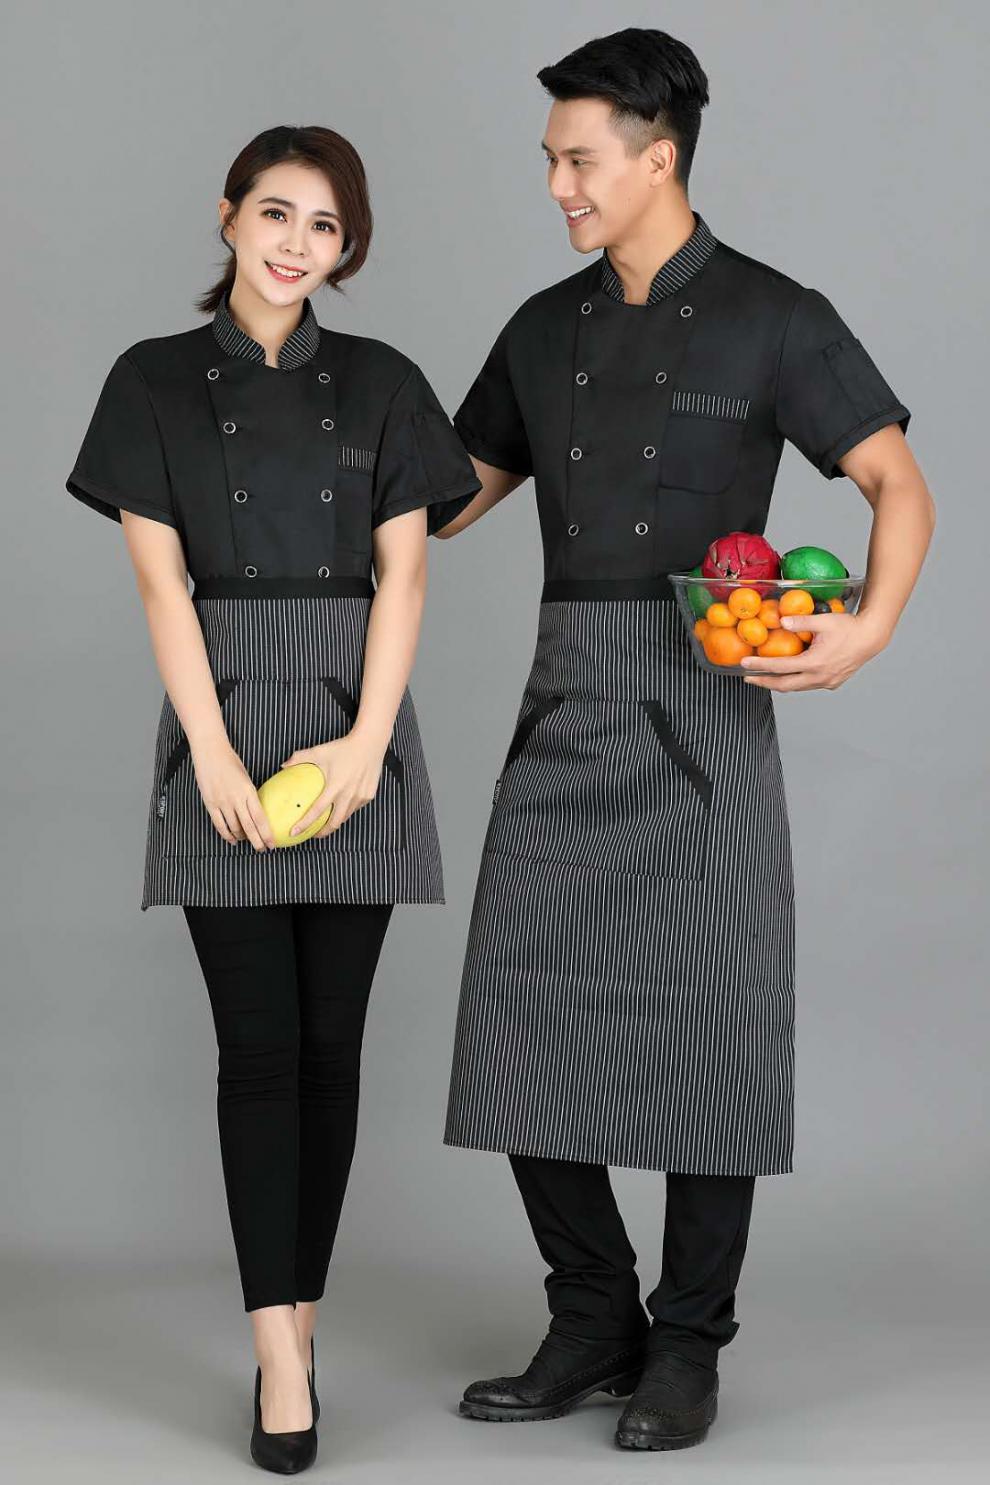 迪牧欧厨师服短袖黑色条纹领后背加网透气夏季时尚厨房帮工后厨均可